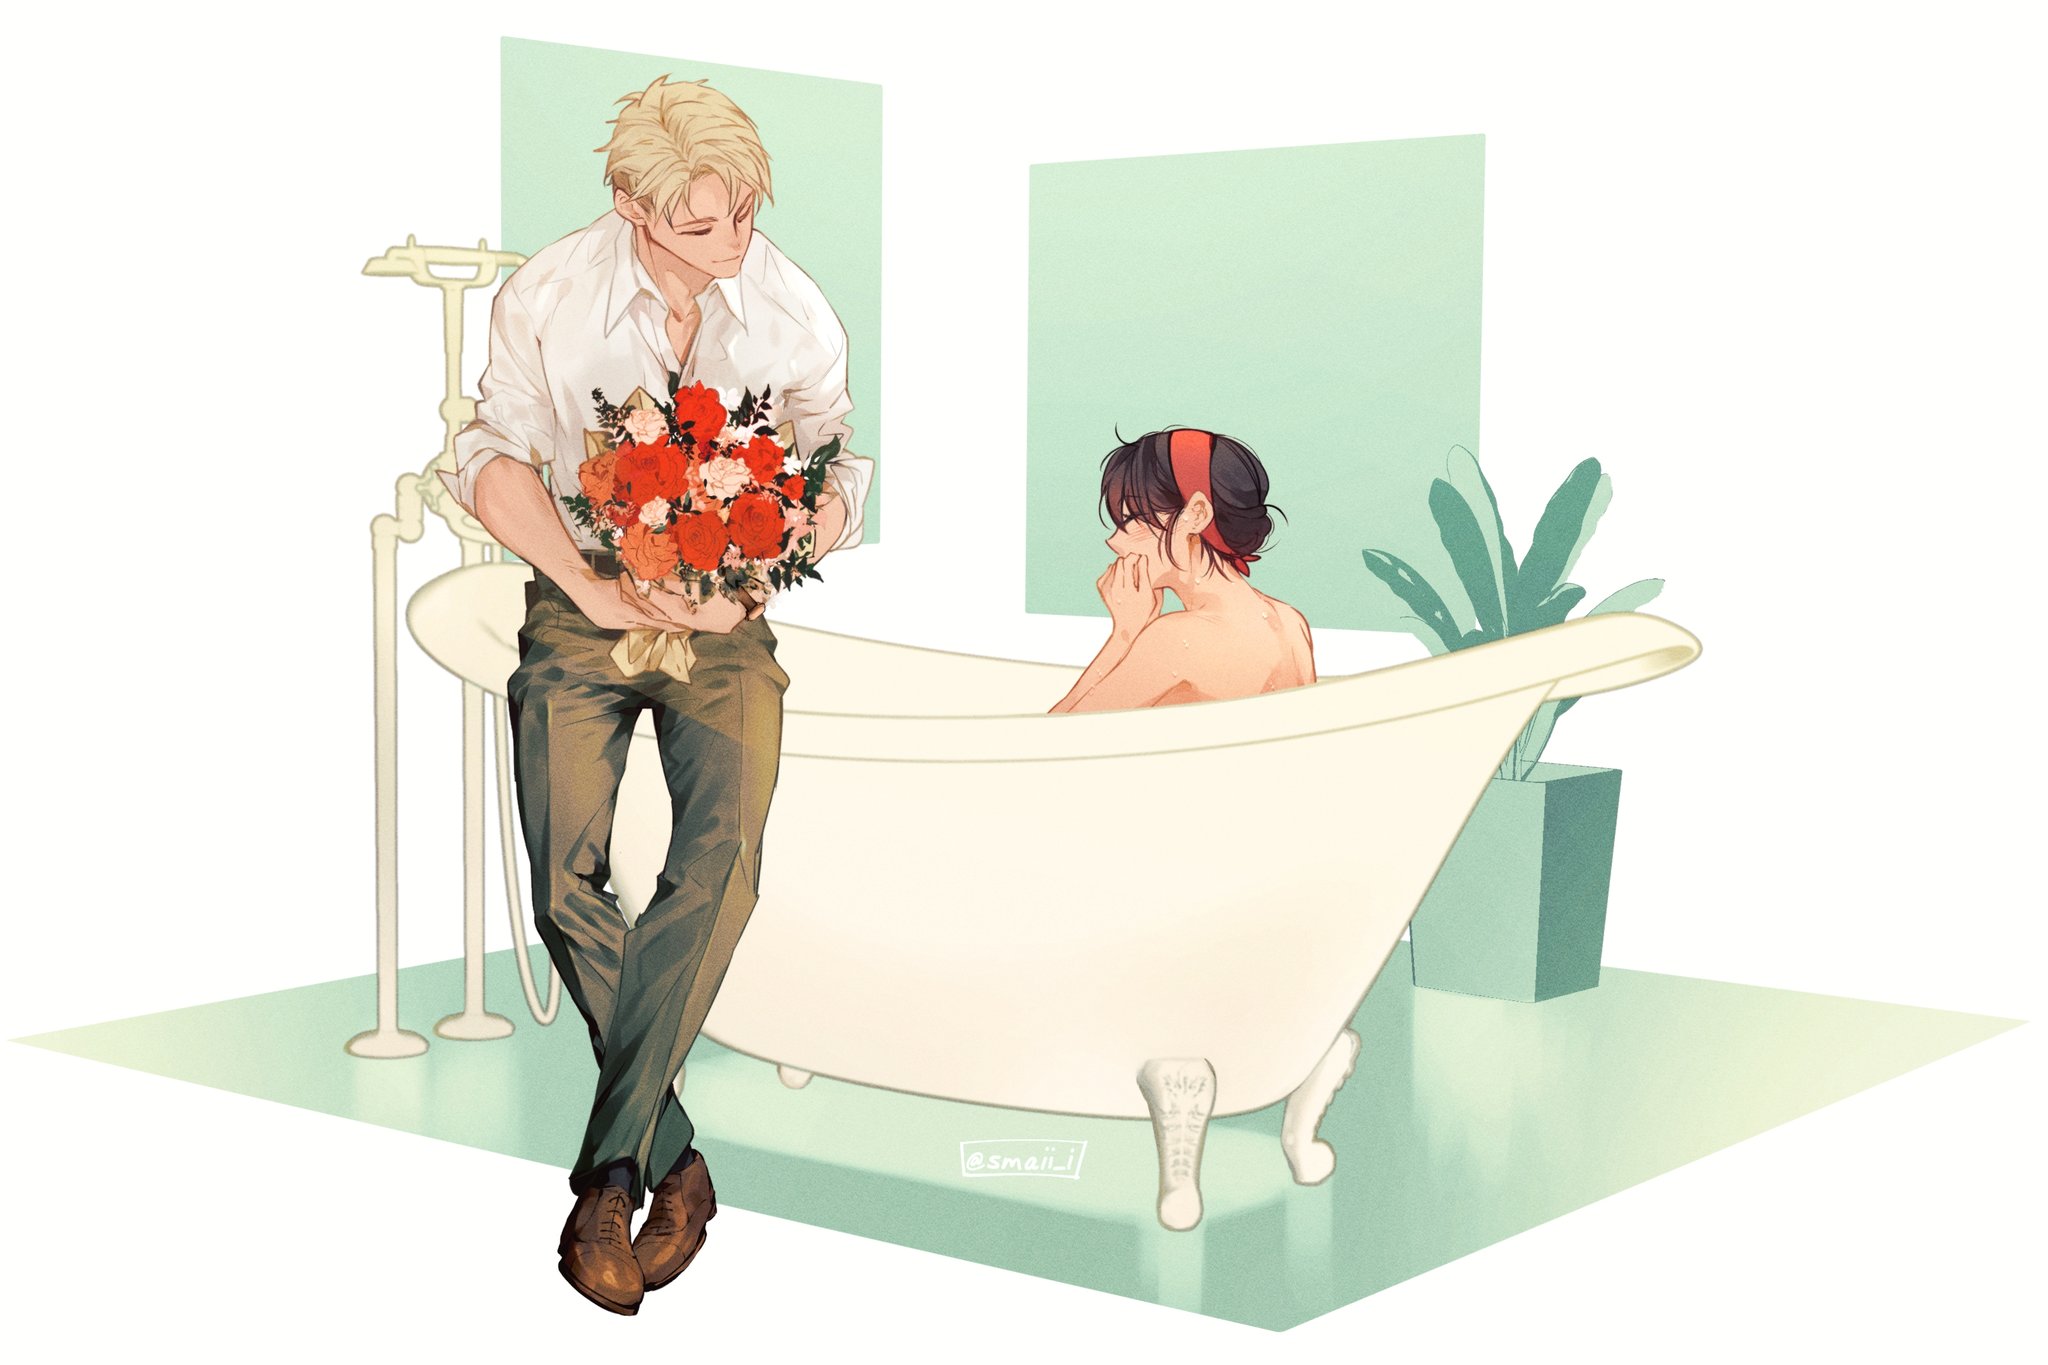 Anime 2048x1365 Spy x Family Loid Forger Yor Forger bathtub flowers anime boys anime girls closed eyes